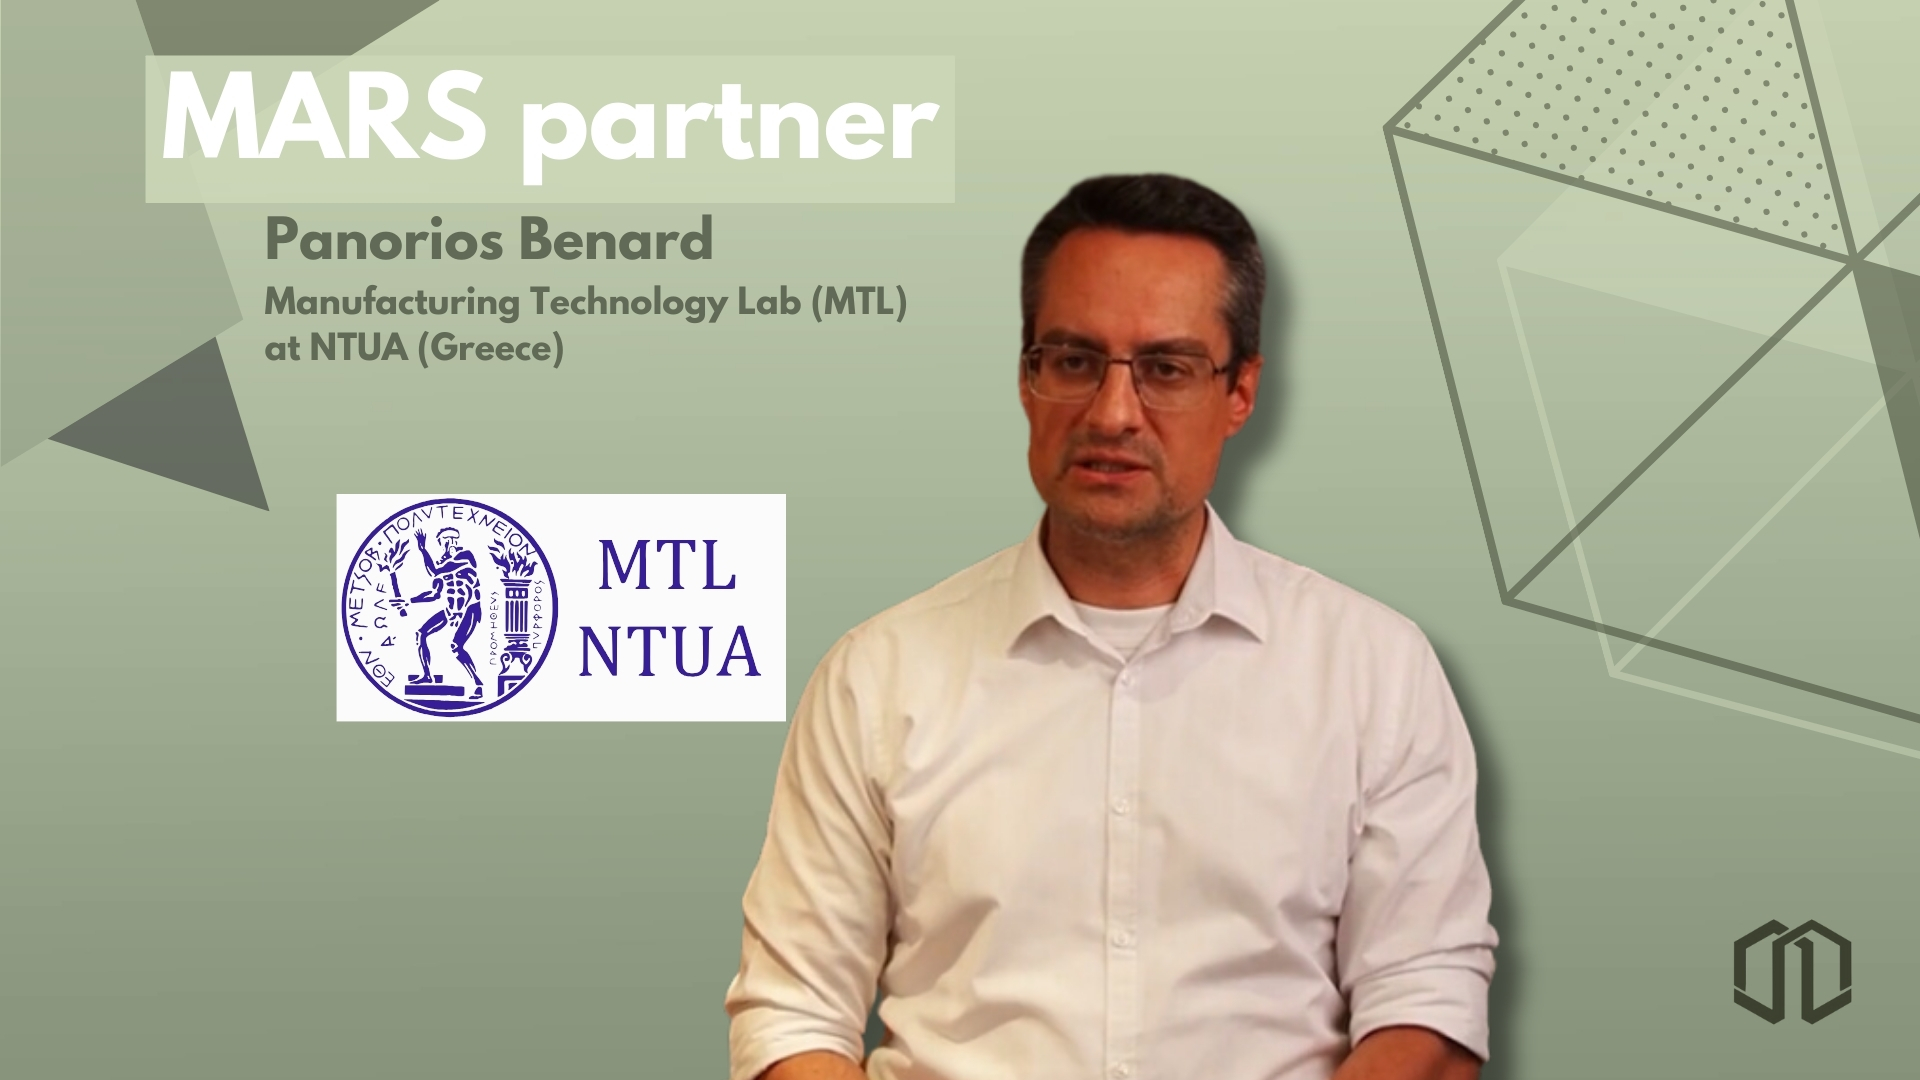 Meet our partner: Video interview with Panorios Benard (MTL NTUA) 